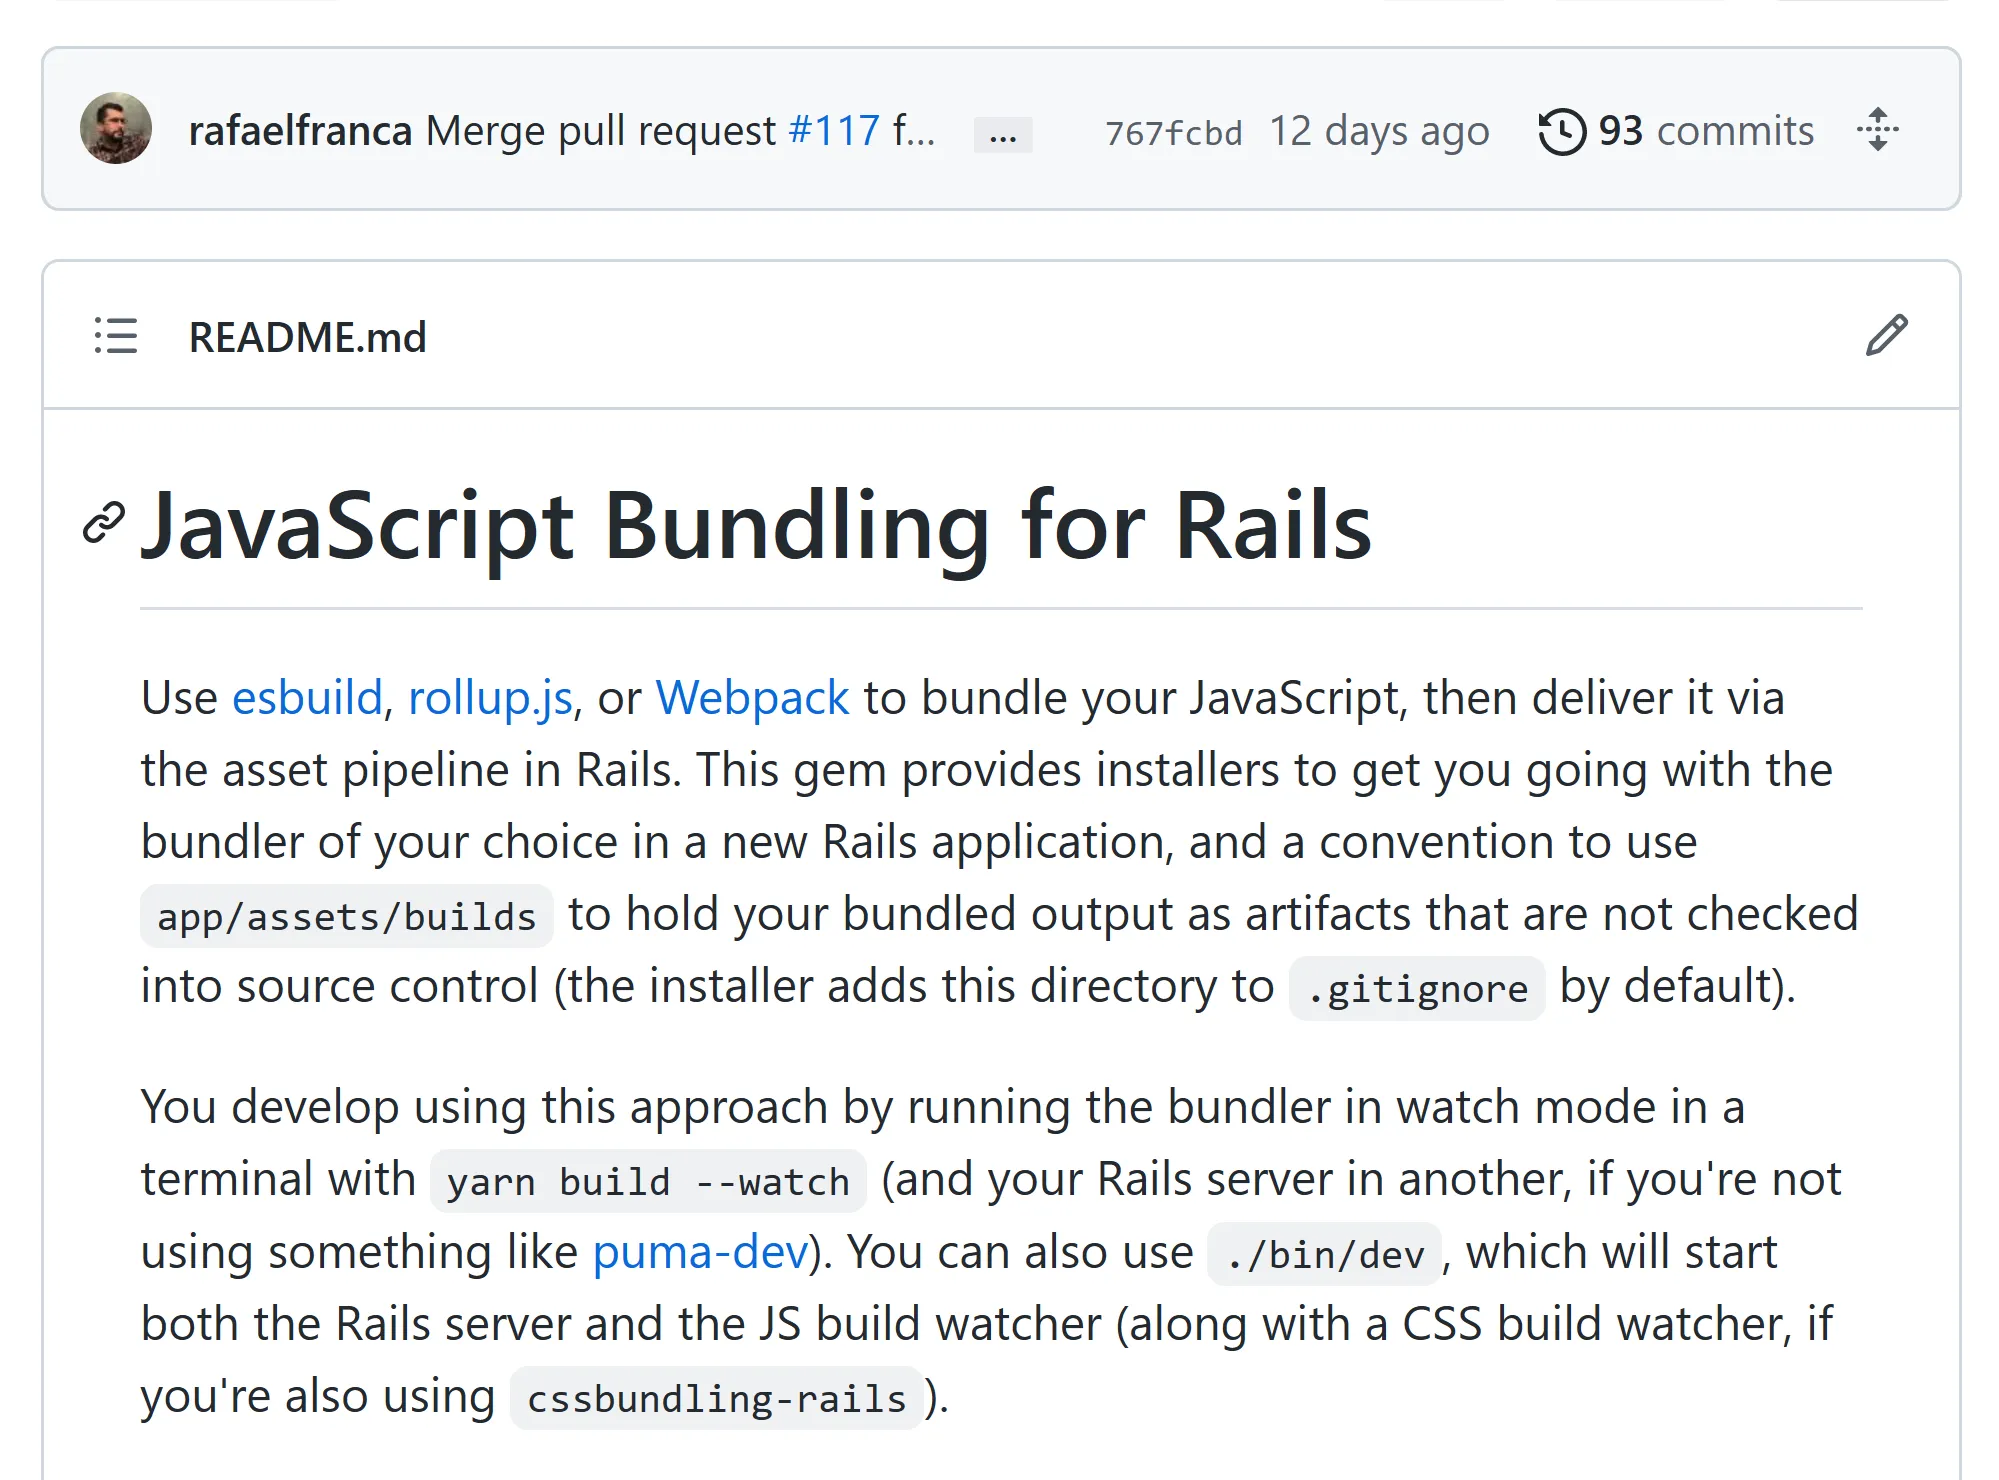 jsbundling-rails readme on GitHub